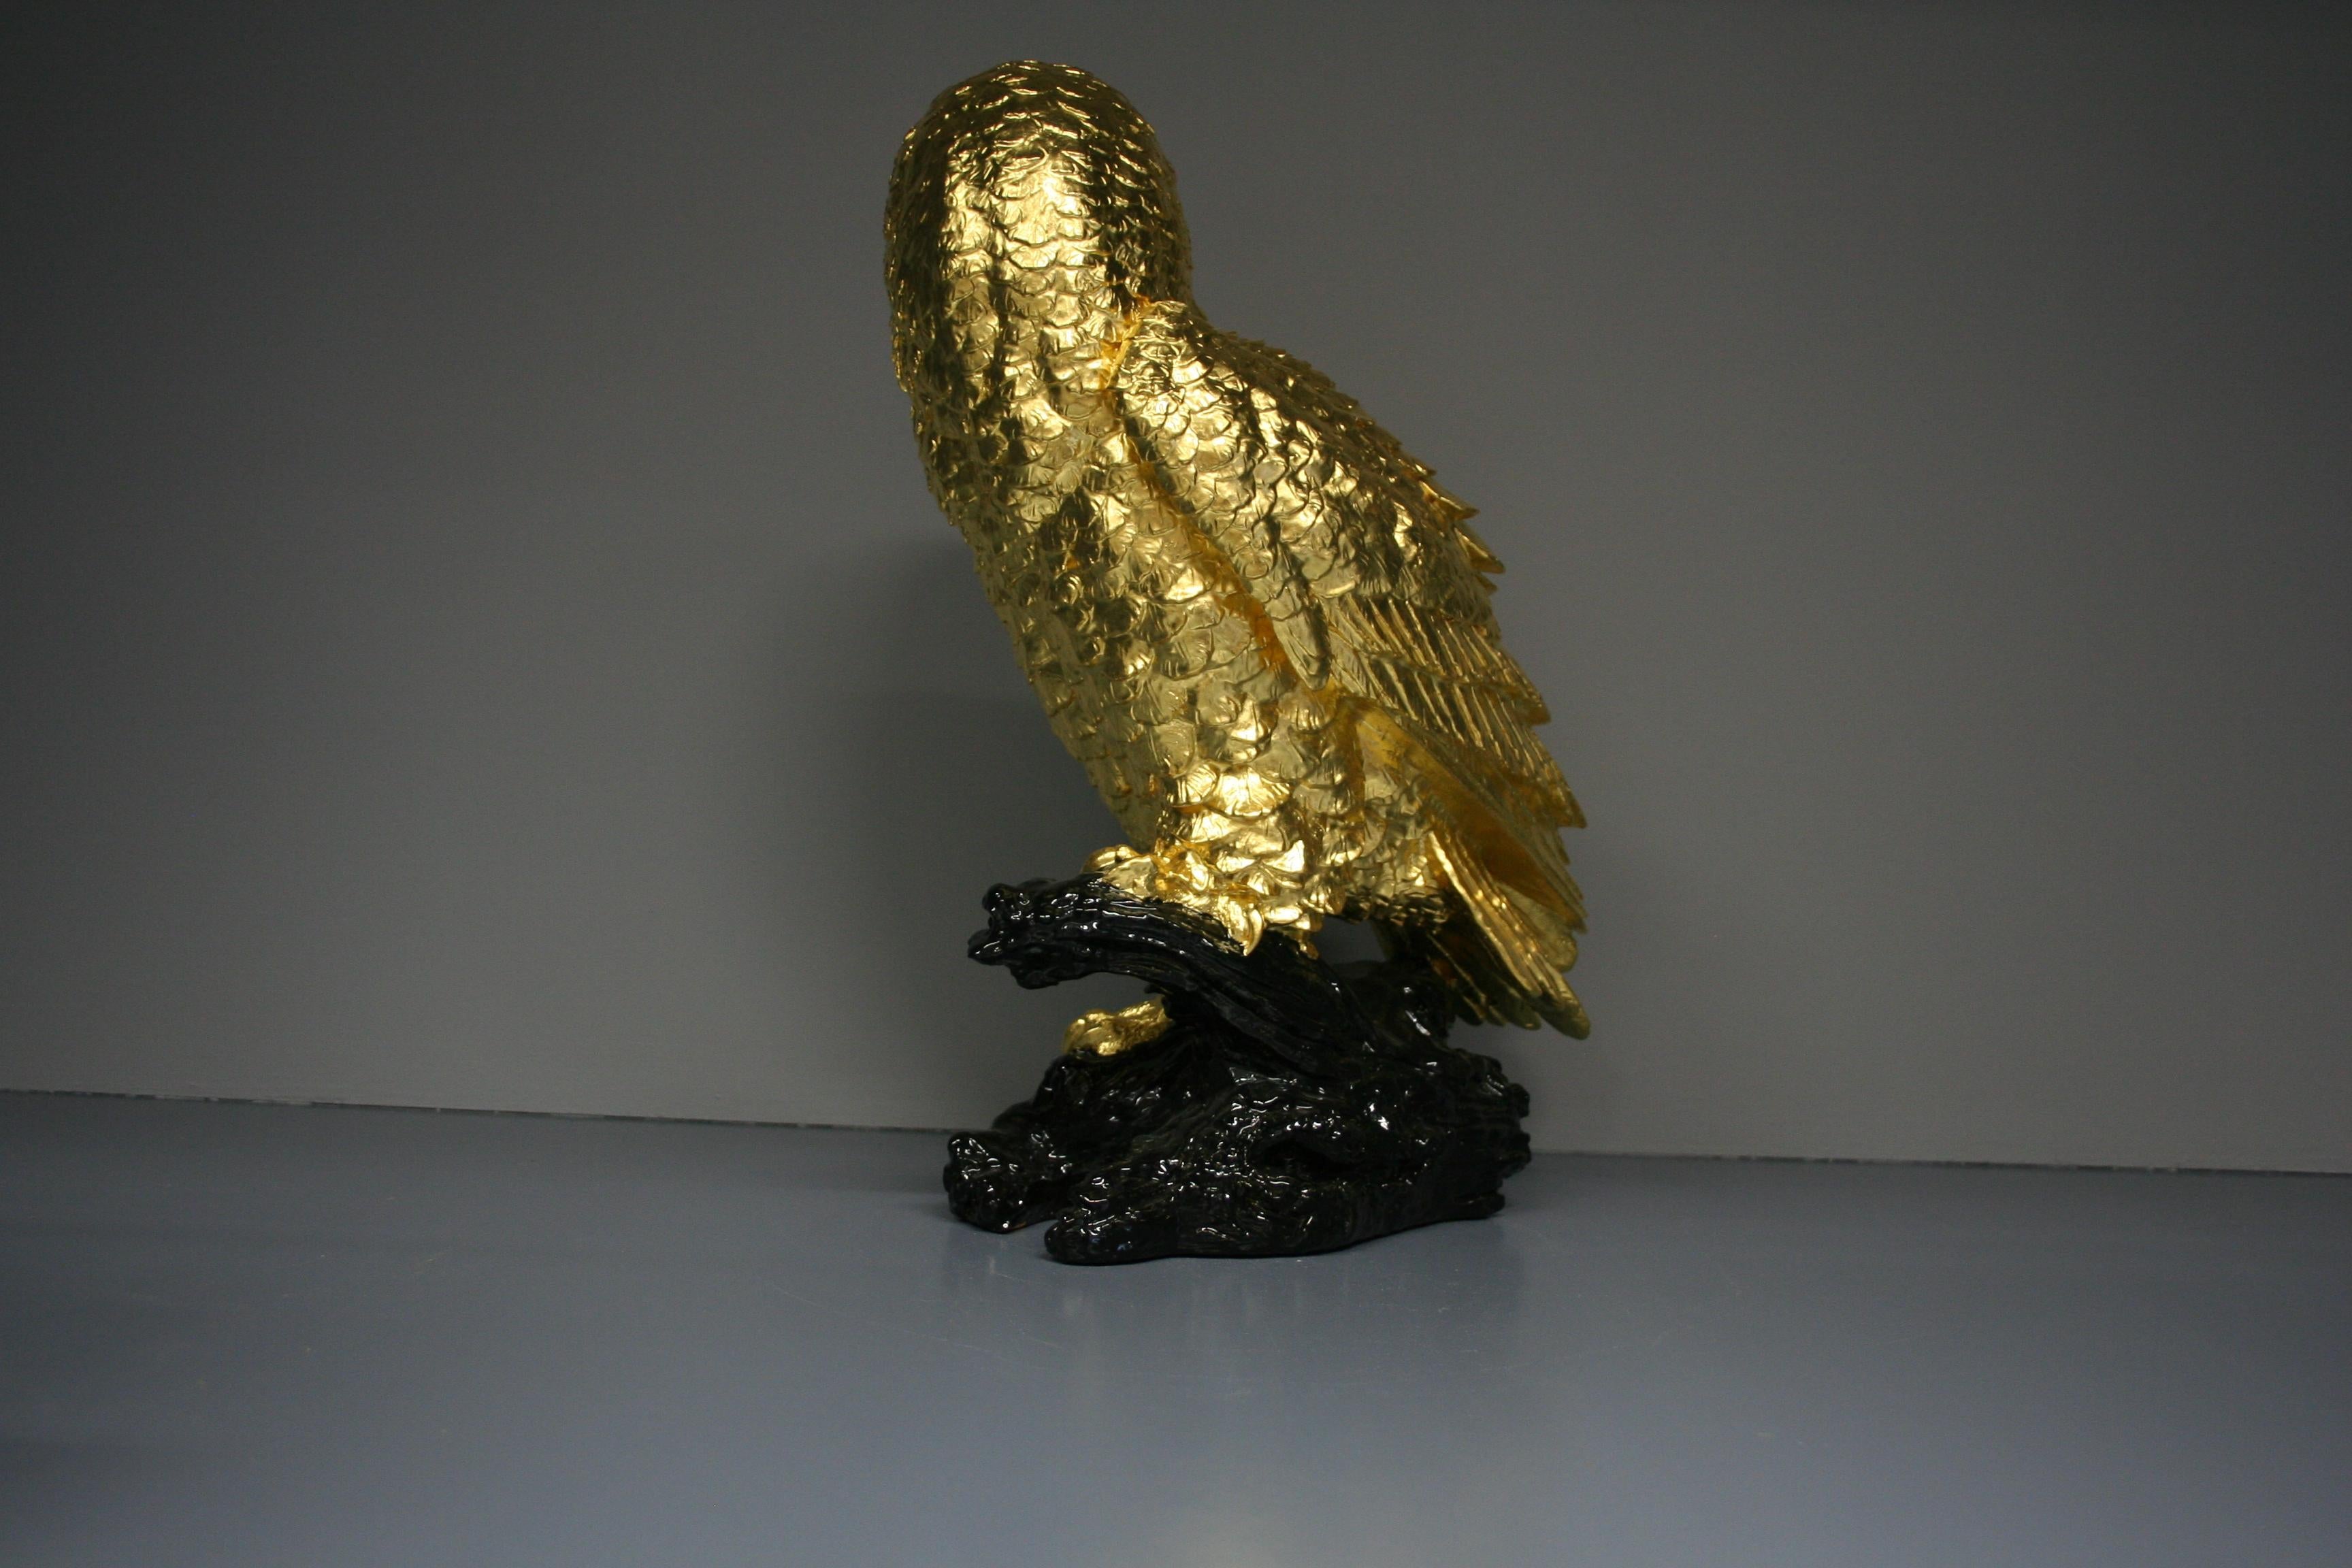 Golden owl 24 Karat gilded - Realist Sculpture by Steven